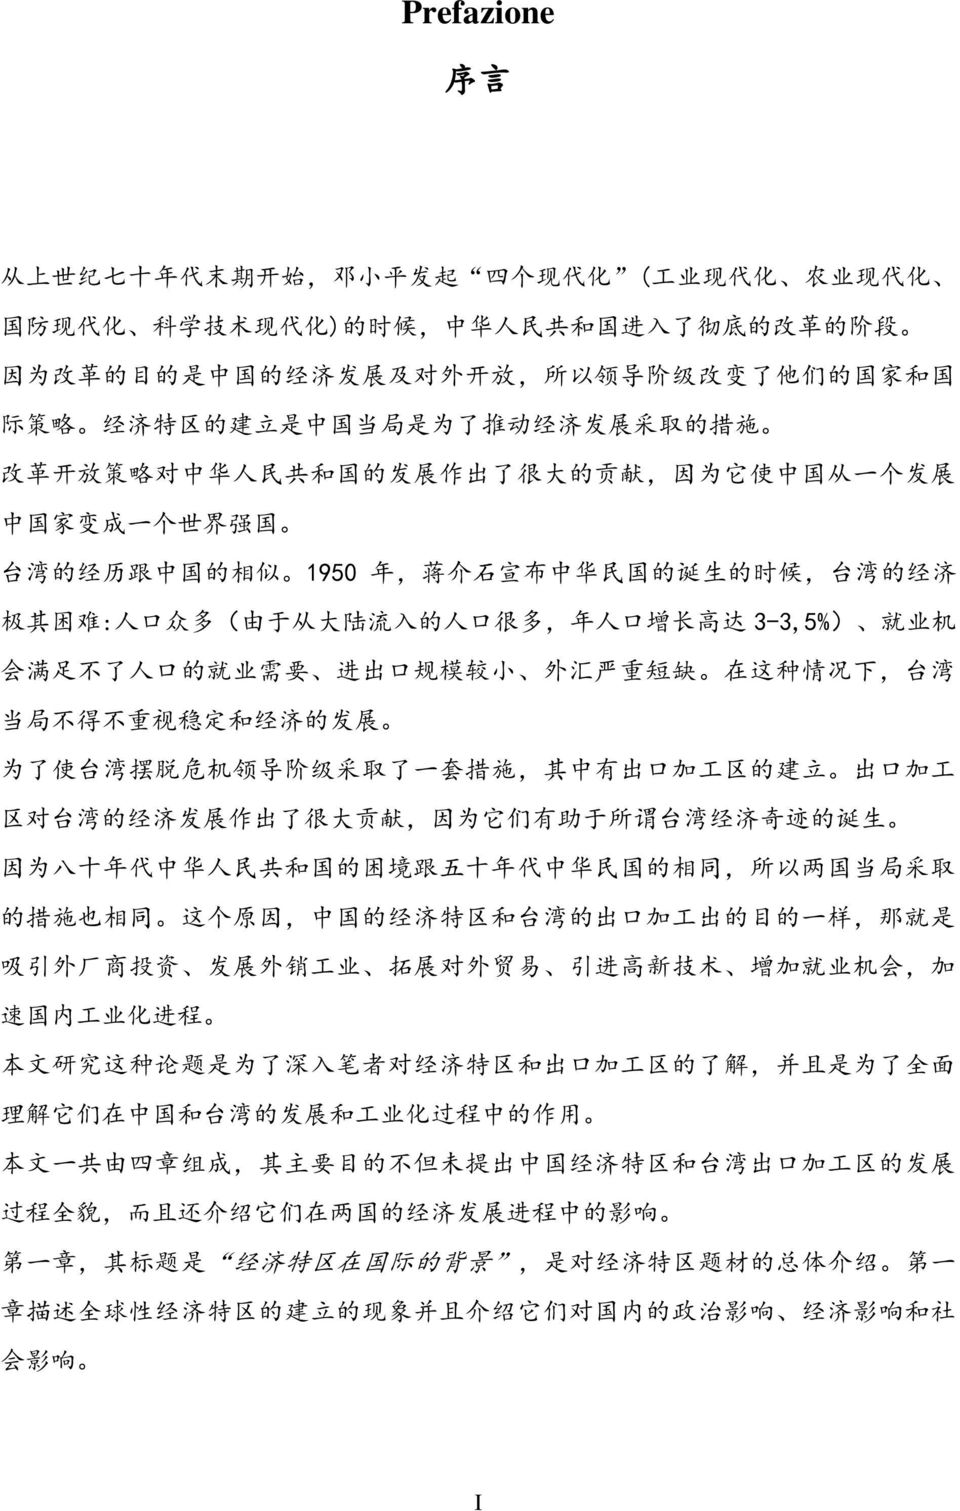 1950 年, 蒋 介 石 宣 布 中 华 民 国 的 诞 生 的 时 候, 台 湾 的 经 济 极 其 困 难 : 人 口 众 多 ( 由 于 从 大 陆 流 入 的 人 口 很 多, 年 人 口 增 长 高 达 3-3,5%) 就 业 机 会 满 足 不 了 人 口 的 就 业 需 要 进 出 口 规 模 较 小 外 汇 严 重 短 缺 在 这 种 情 况 下, 台 湾 当 局 不 得 不